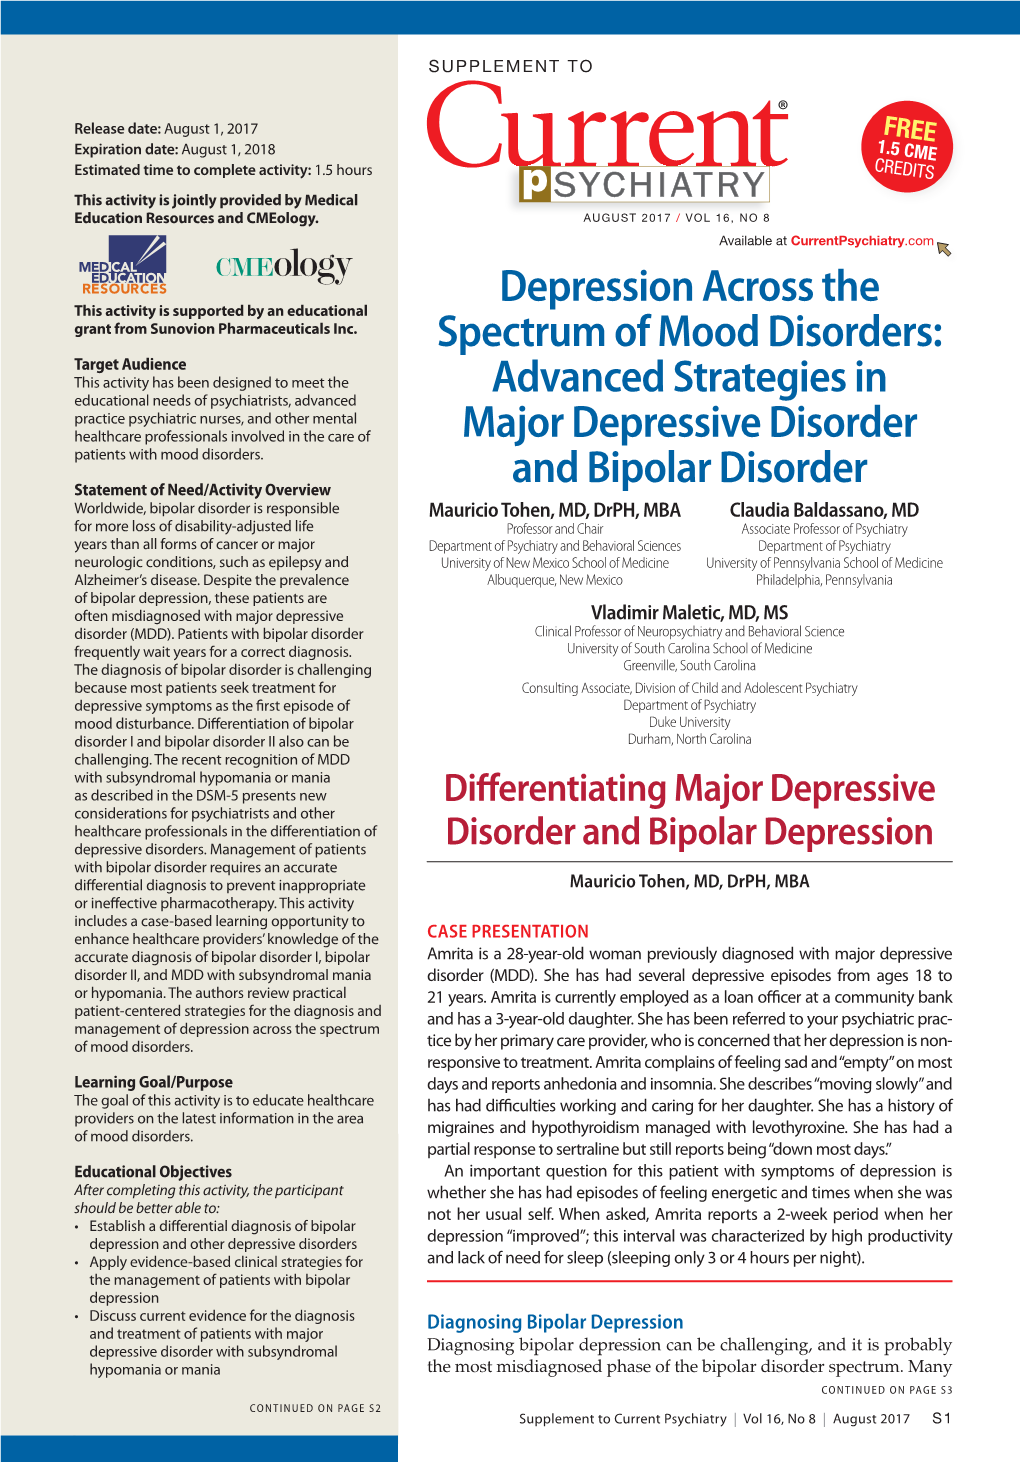 Advanced Strategies in Major Depressive Disorder and Bipolar Disorder